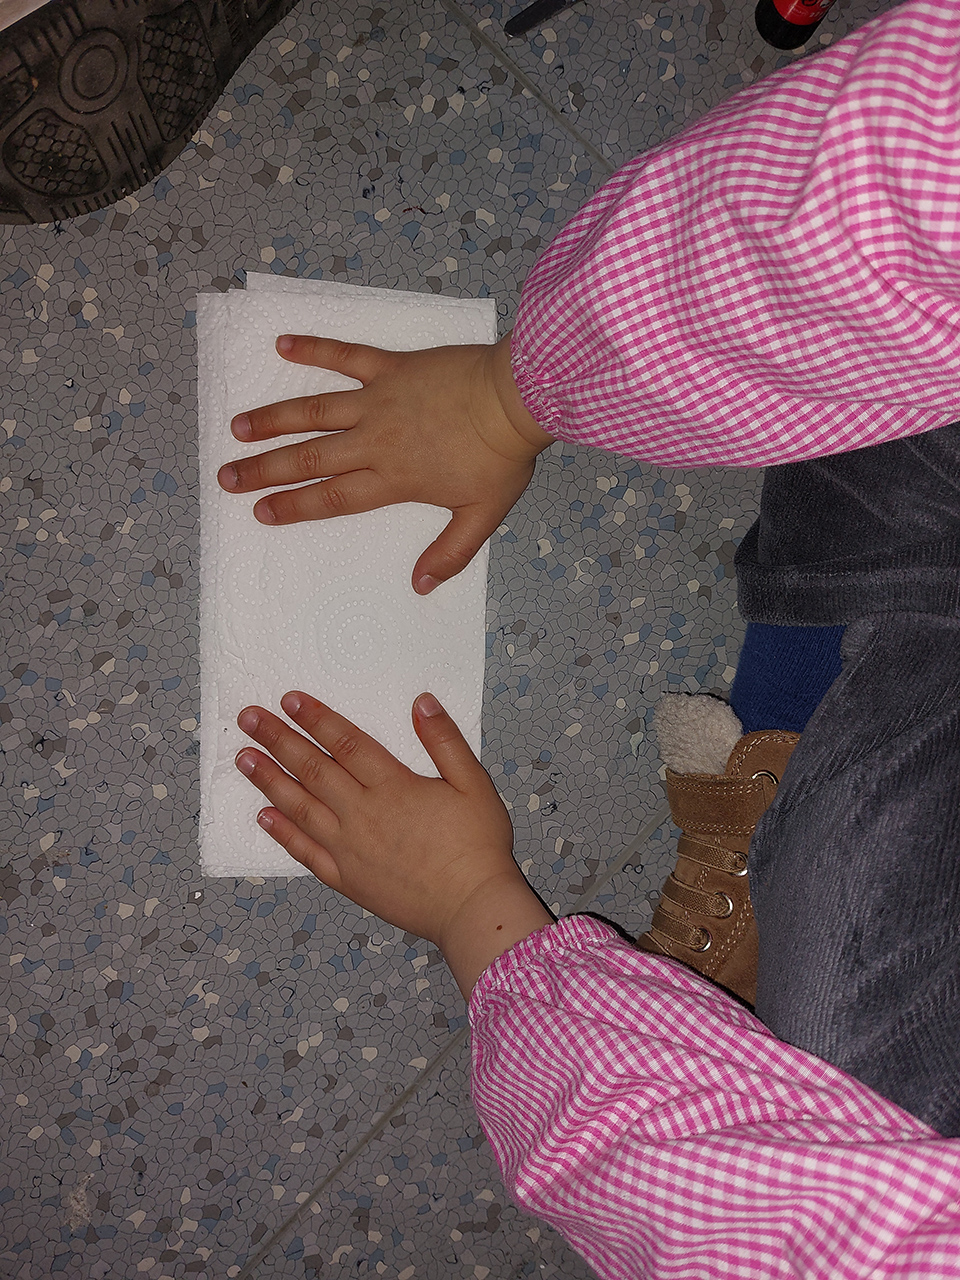 mani di bambina su un foglio